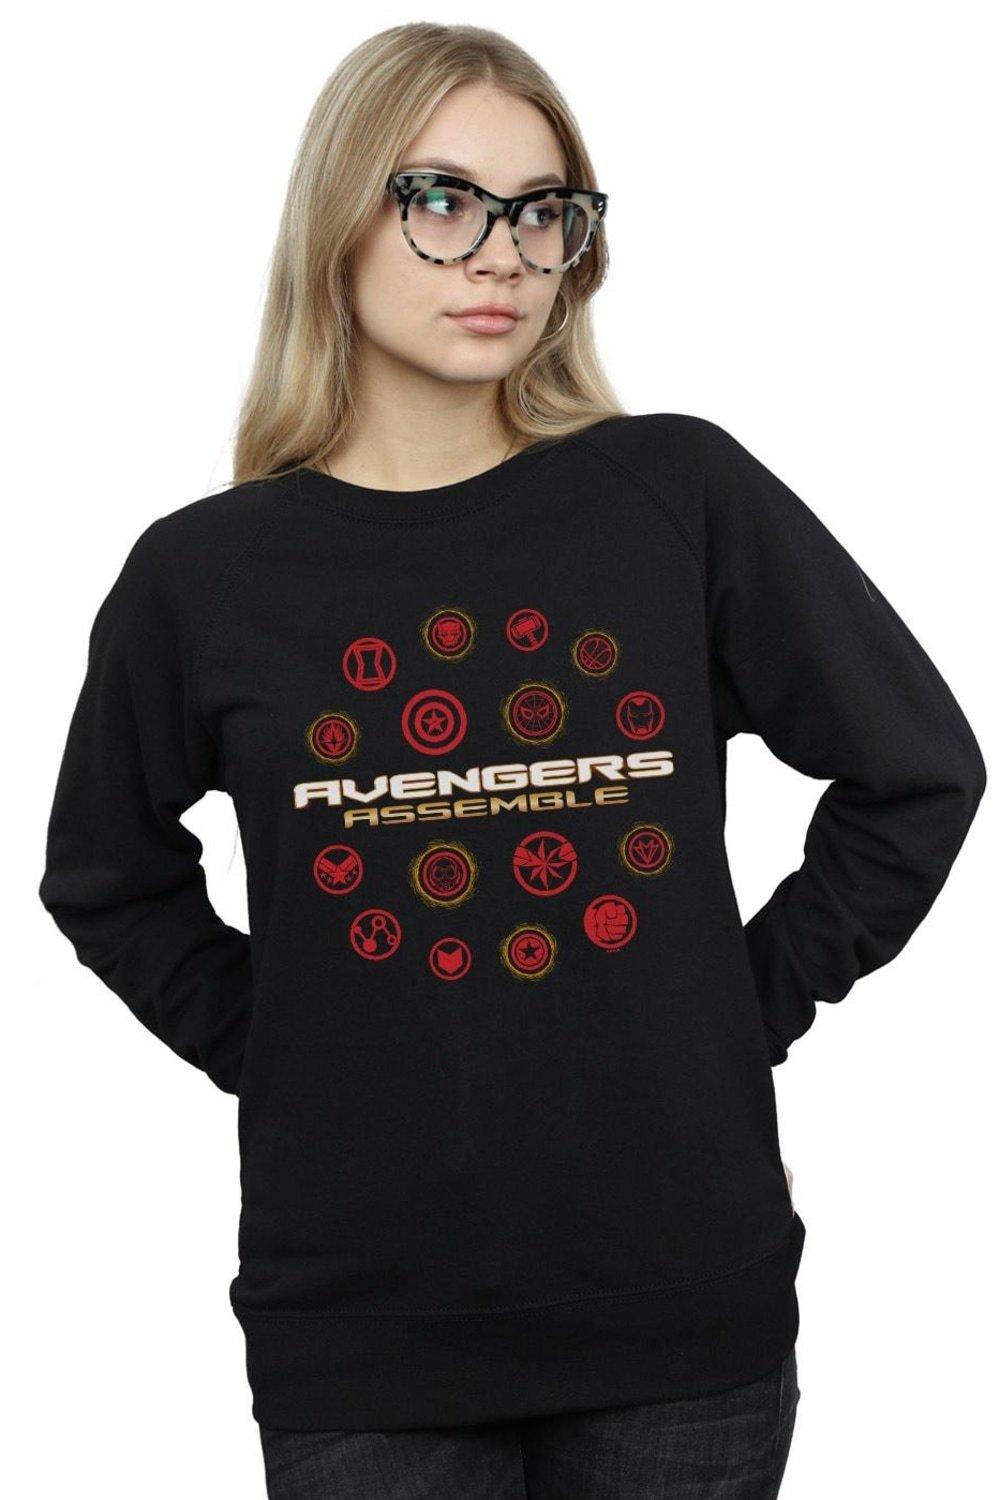 Avengers Endgame Avengers Assemble Sweatshirt